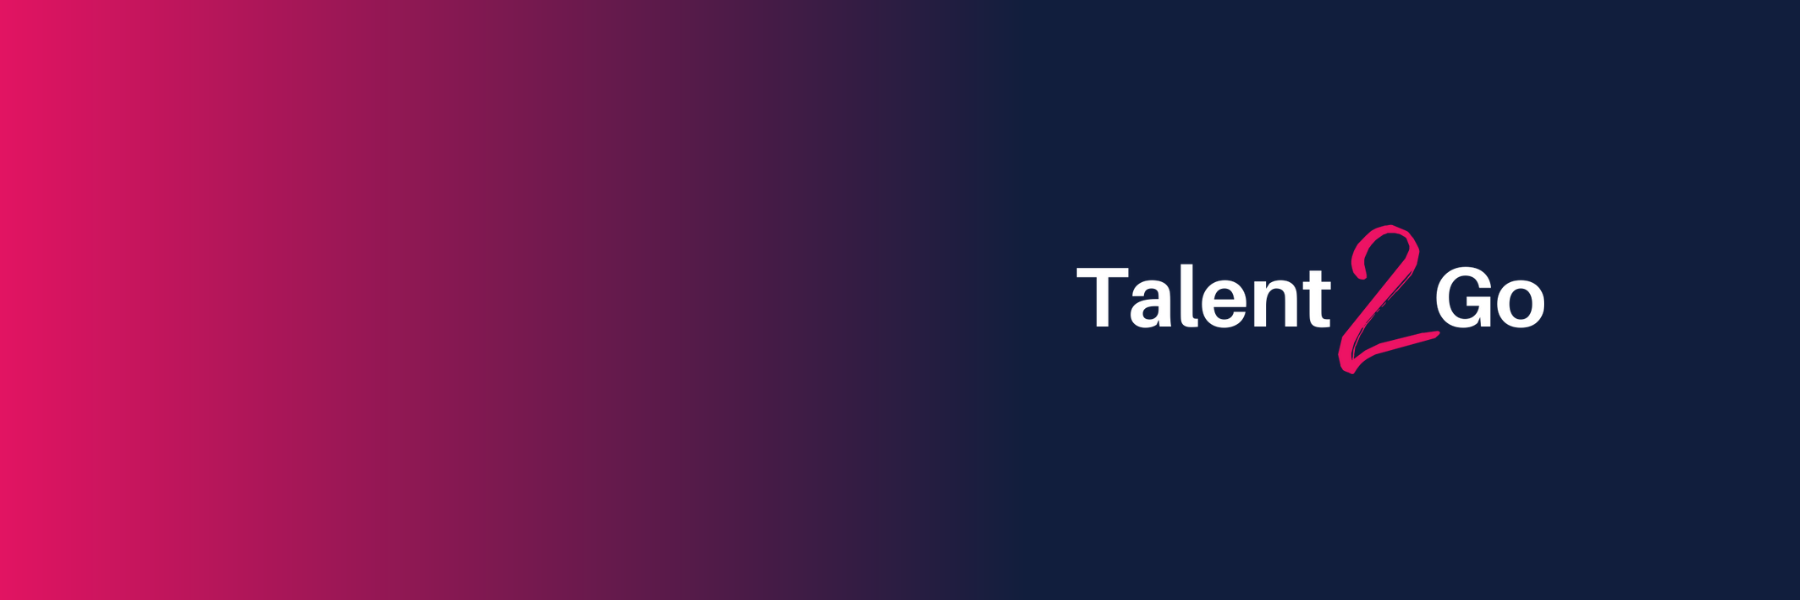 Talent2Go / startup von Landau / Background